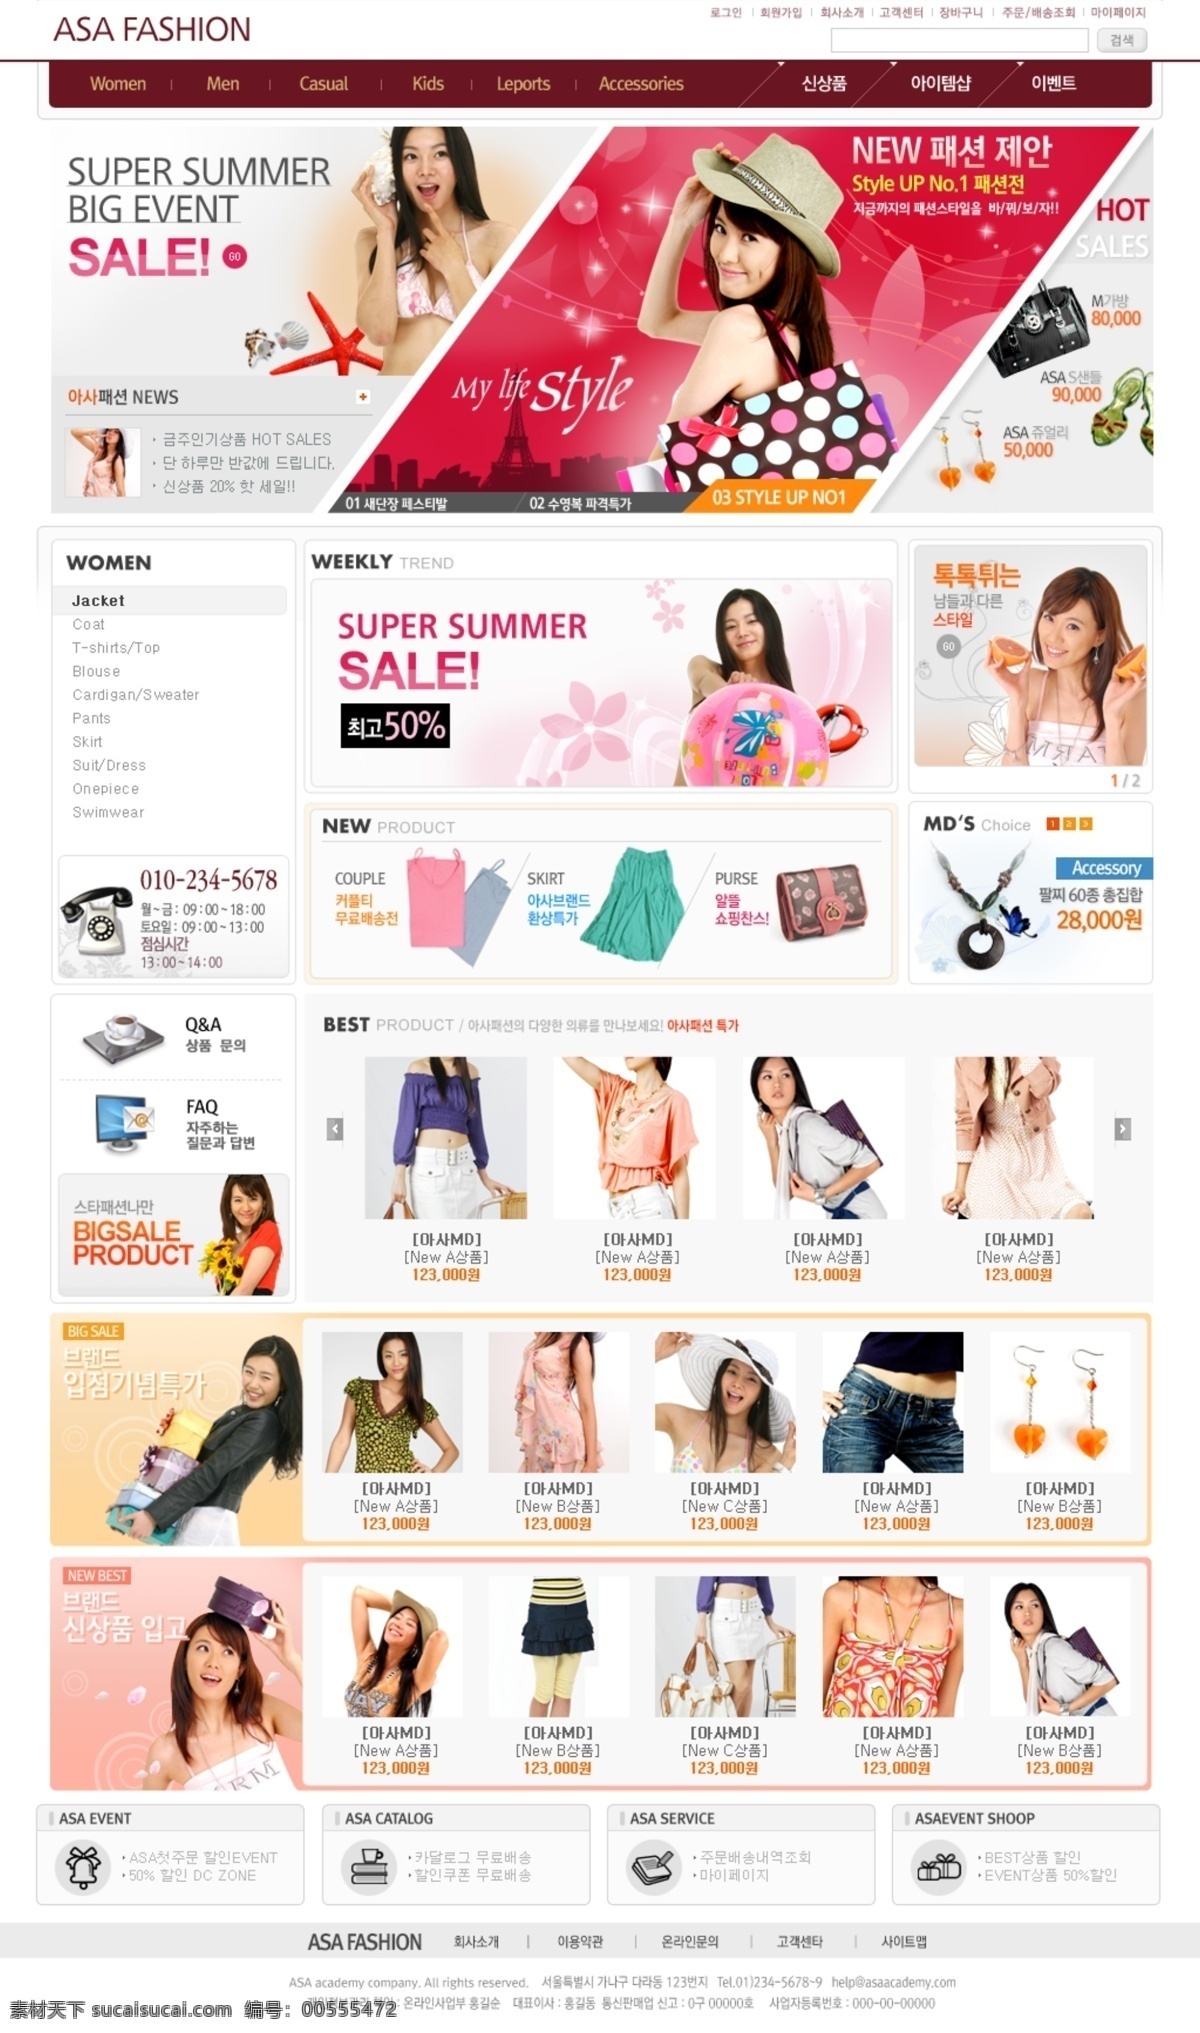 流行 夏装 服饰 商城 网页模板 韩国风格 女性 衣服 网页素材